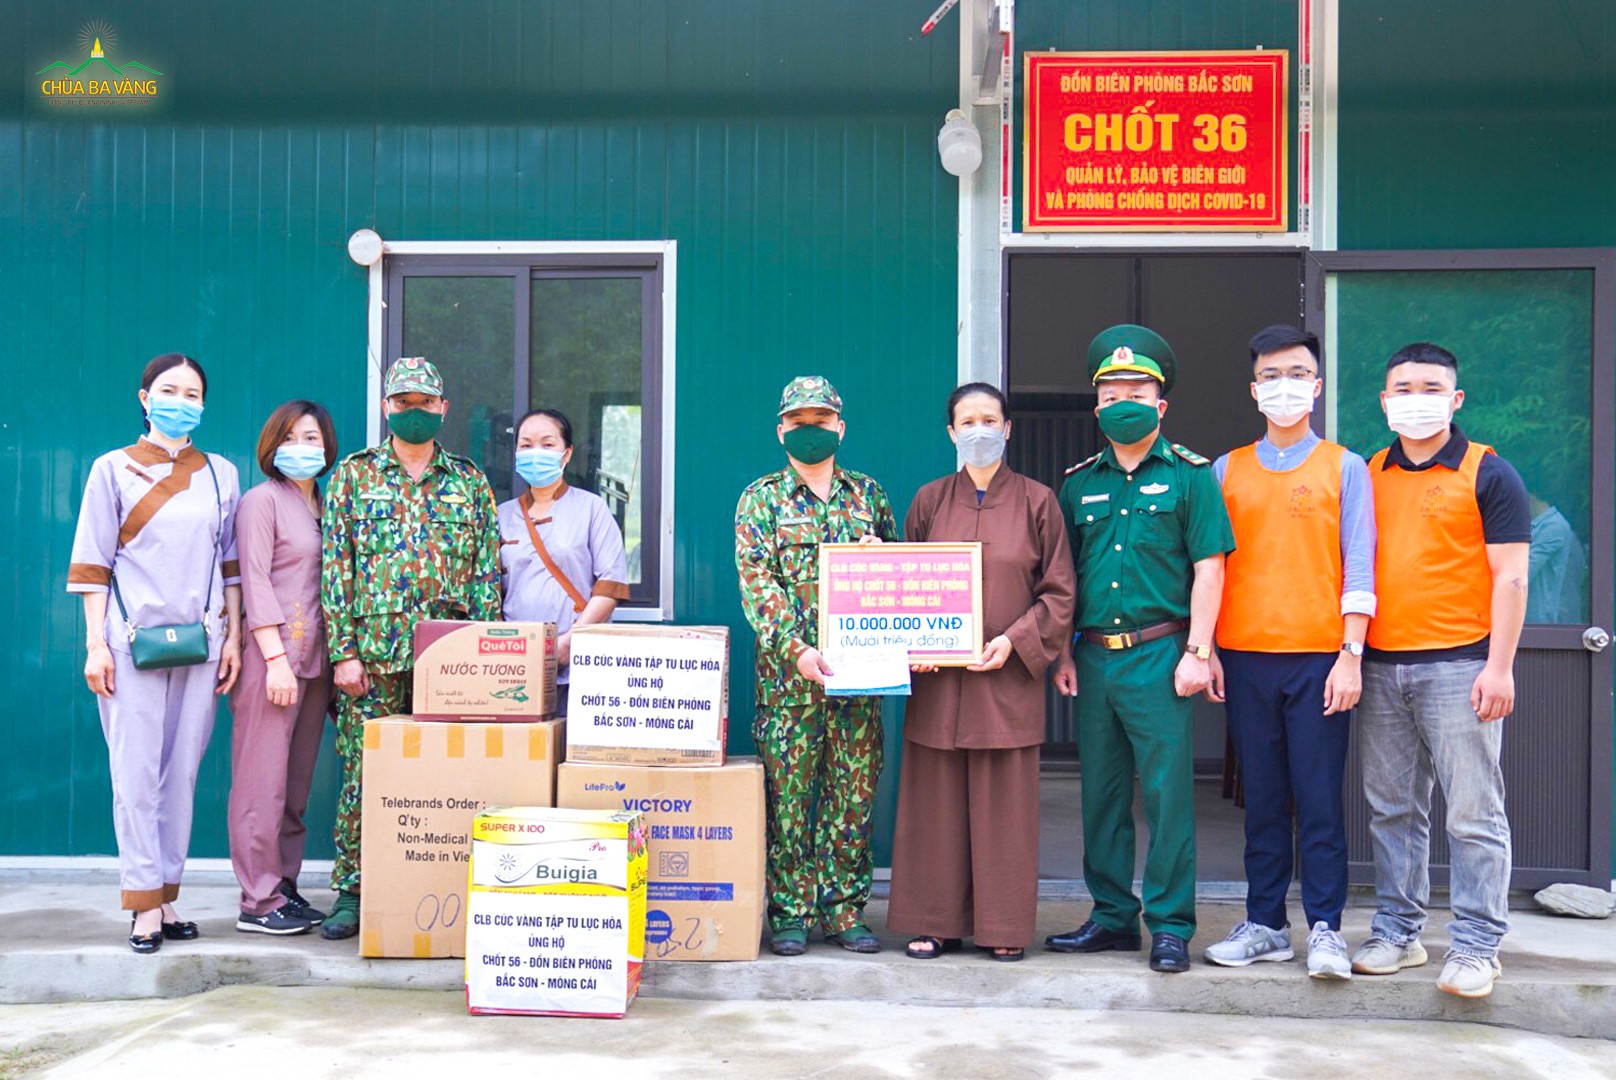 Đoàn từ thiện của Phật tử chùa Ba Vàng trao quà từ thiện tại chốt 36, đồn biên phòng Bắc Sơn